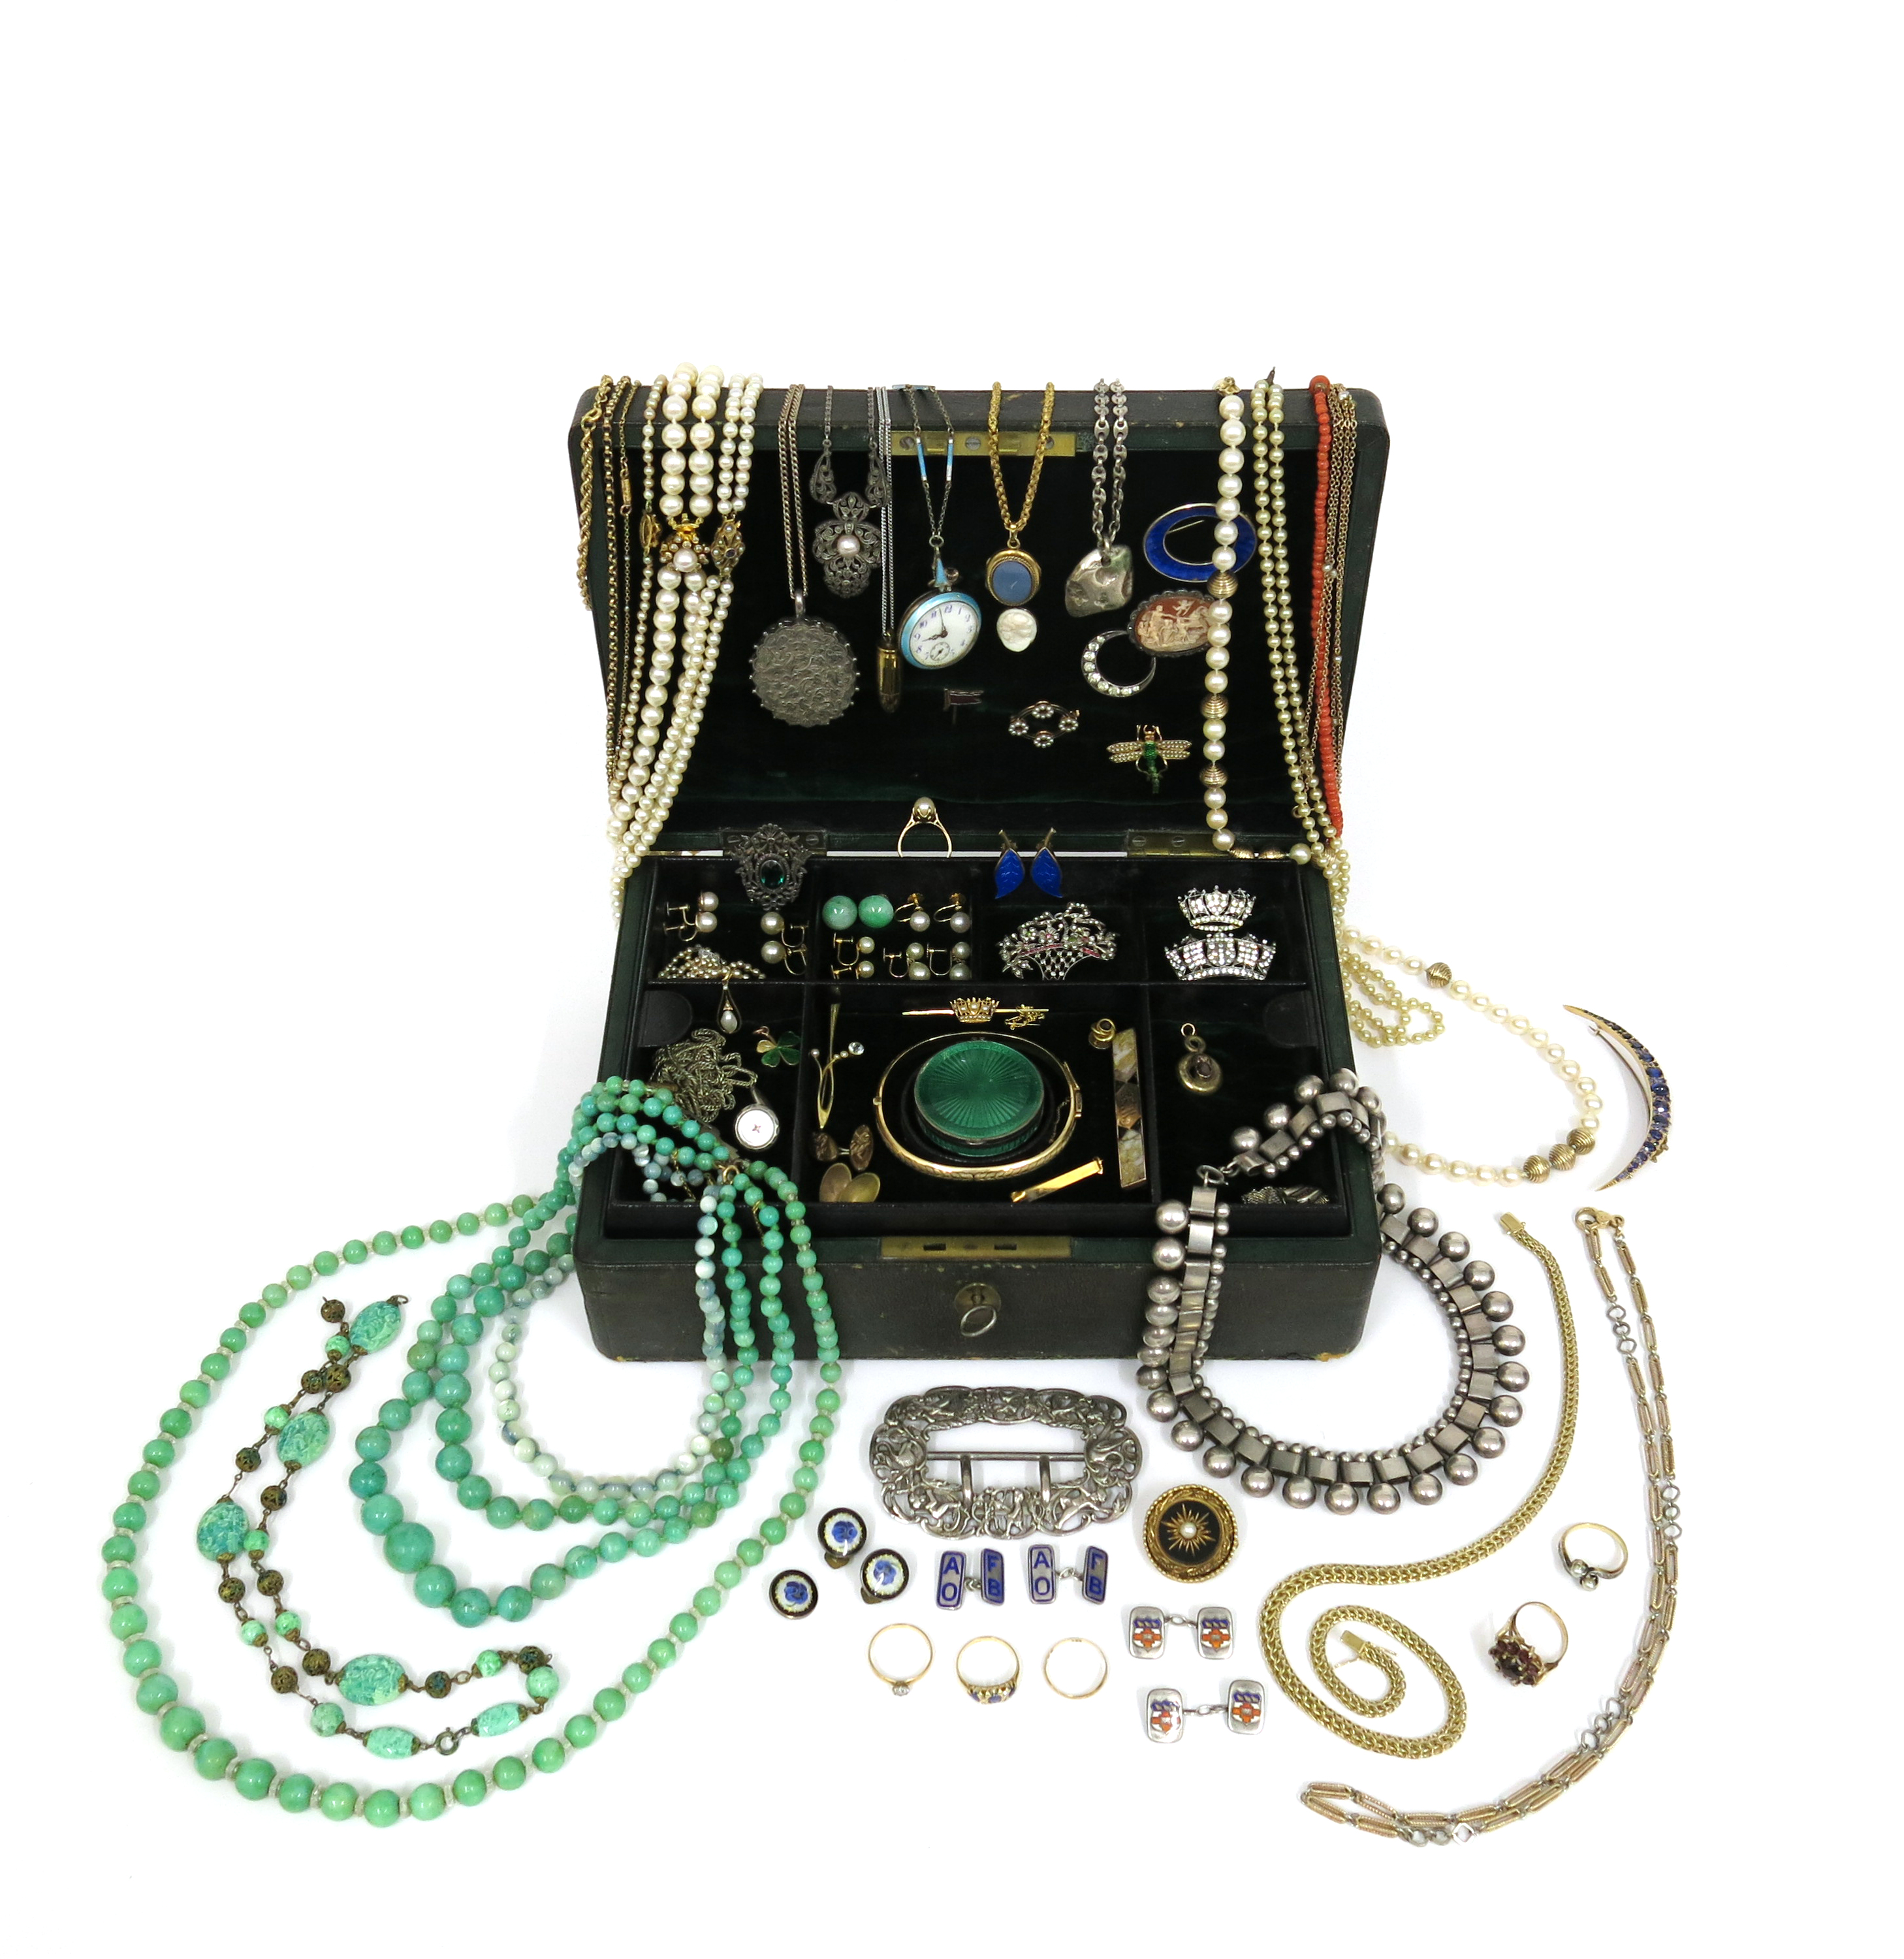 λ A jewellery box containing various items of jewellery, including an 18ct gold wedding band (1.1g), - Image 7 of 8